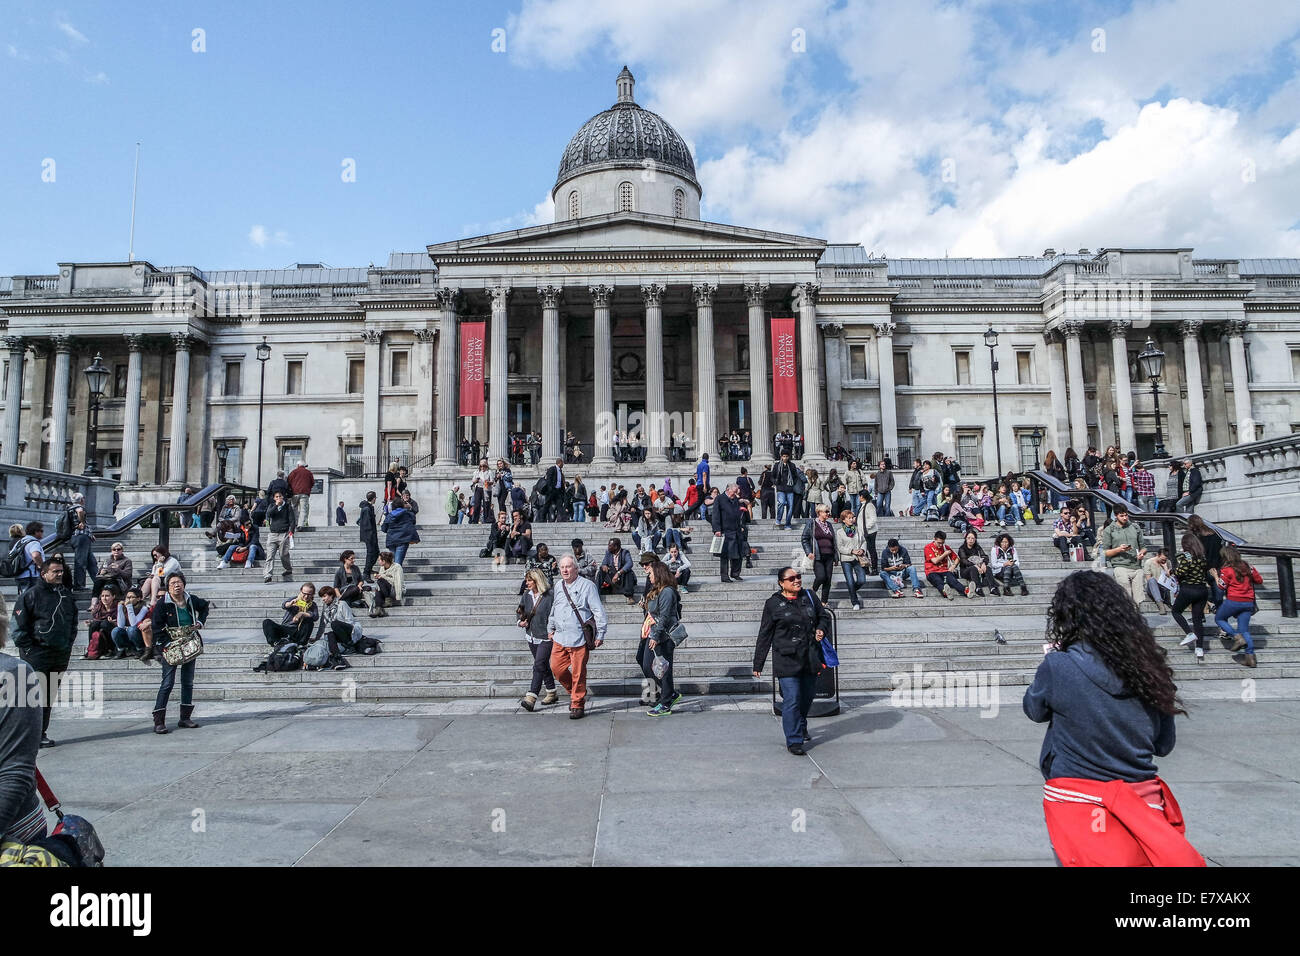 Vue de la National Gallery de Londres. personnes à pied et assise sur les marches Banque D'Images